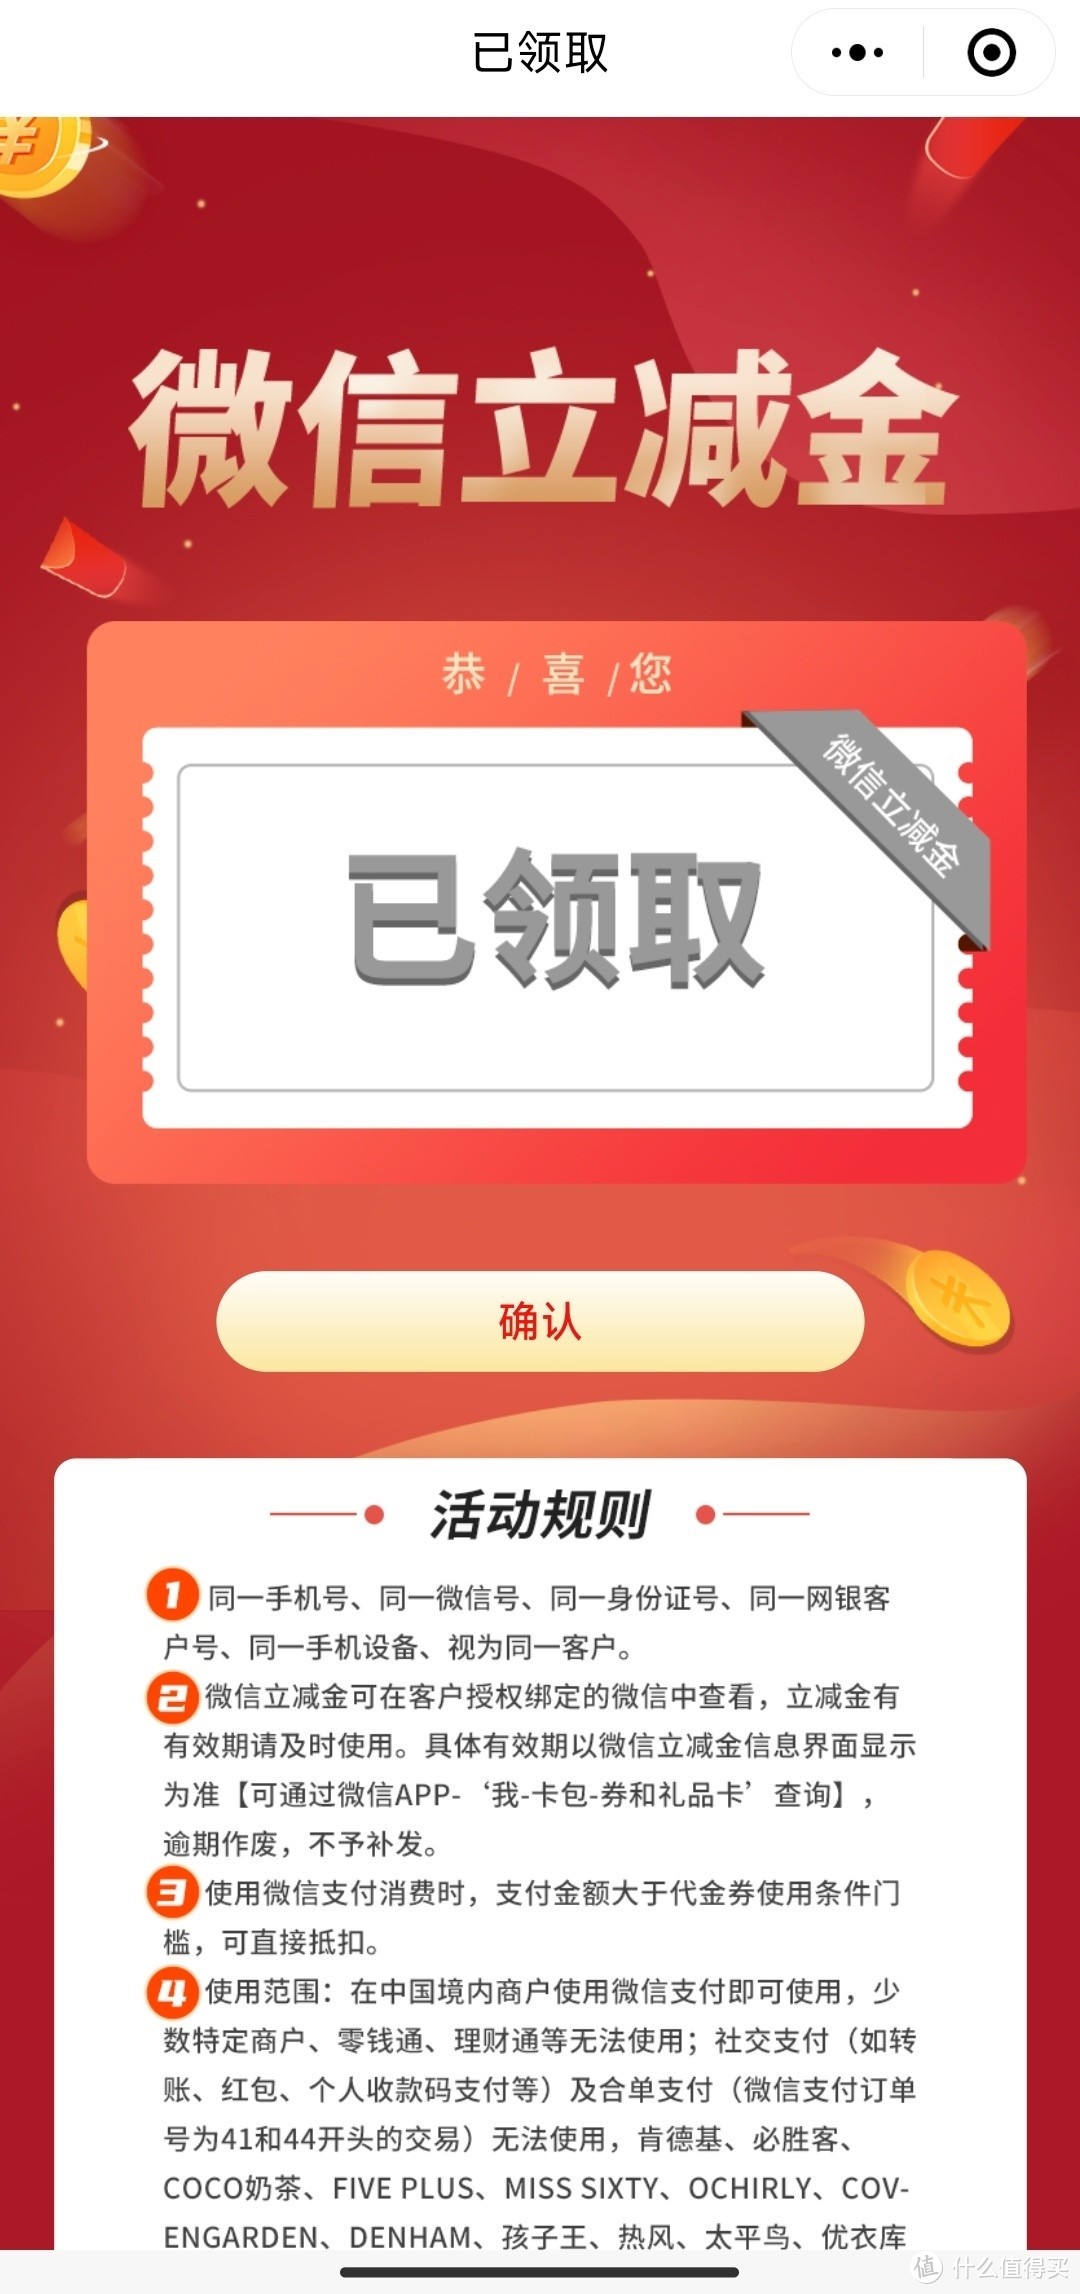 中国银行汽车主题信用卡，可以领取50元微信立减金。